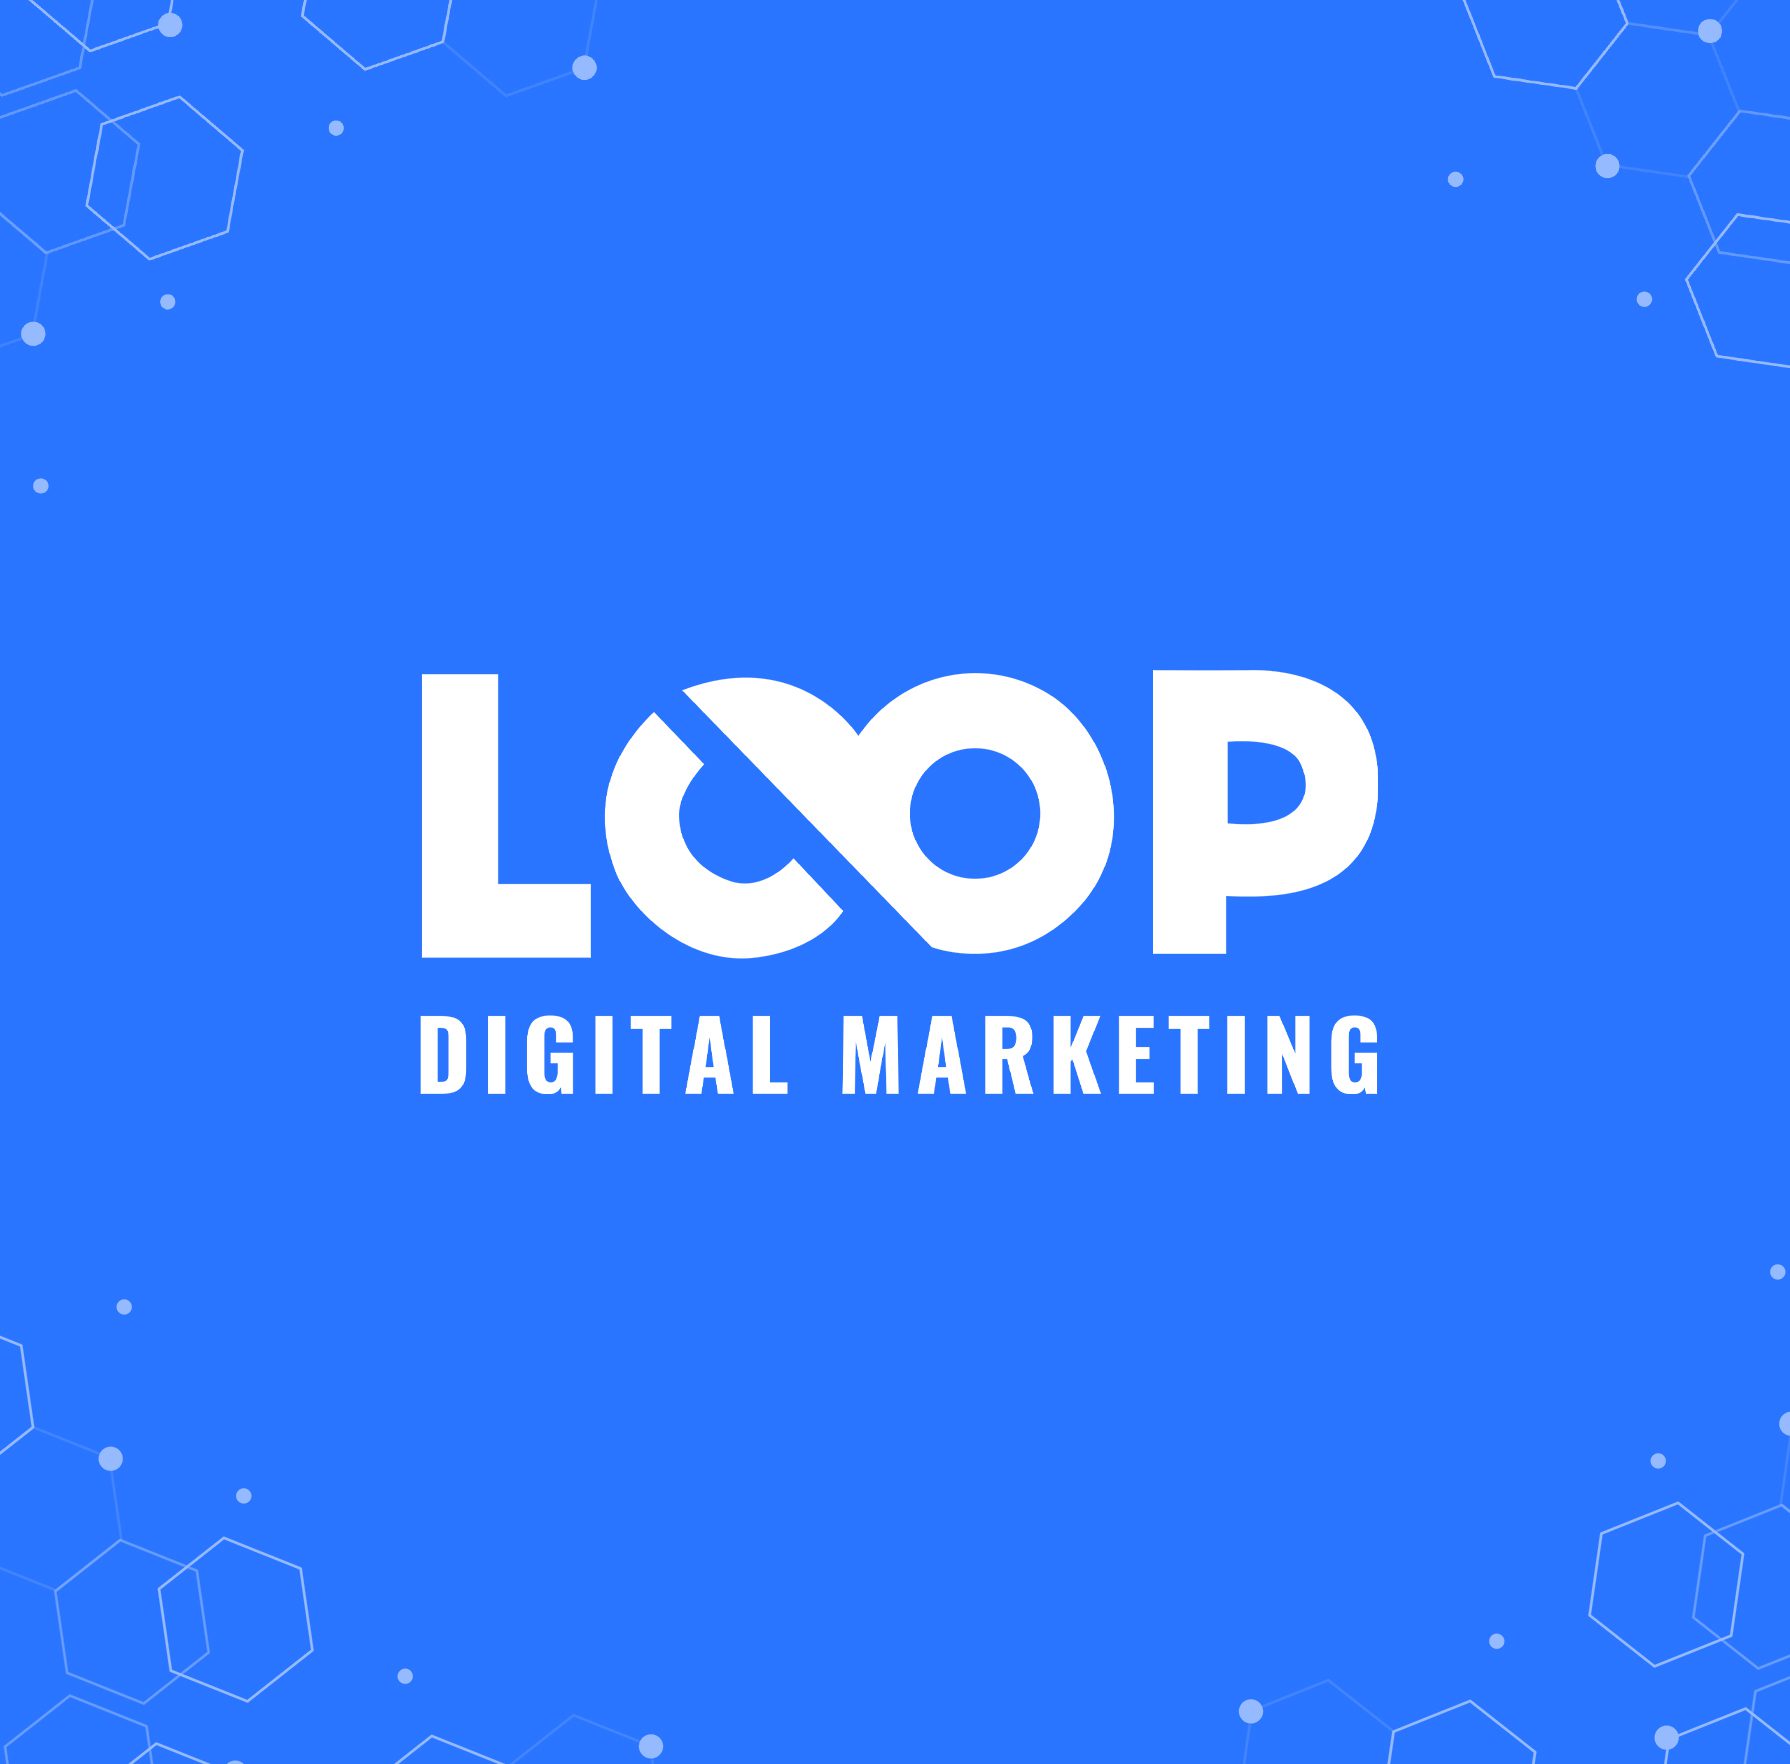 LOOP Digital Marketing Agency Logo Illustration